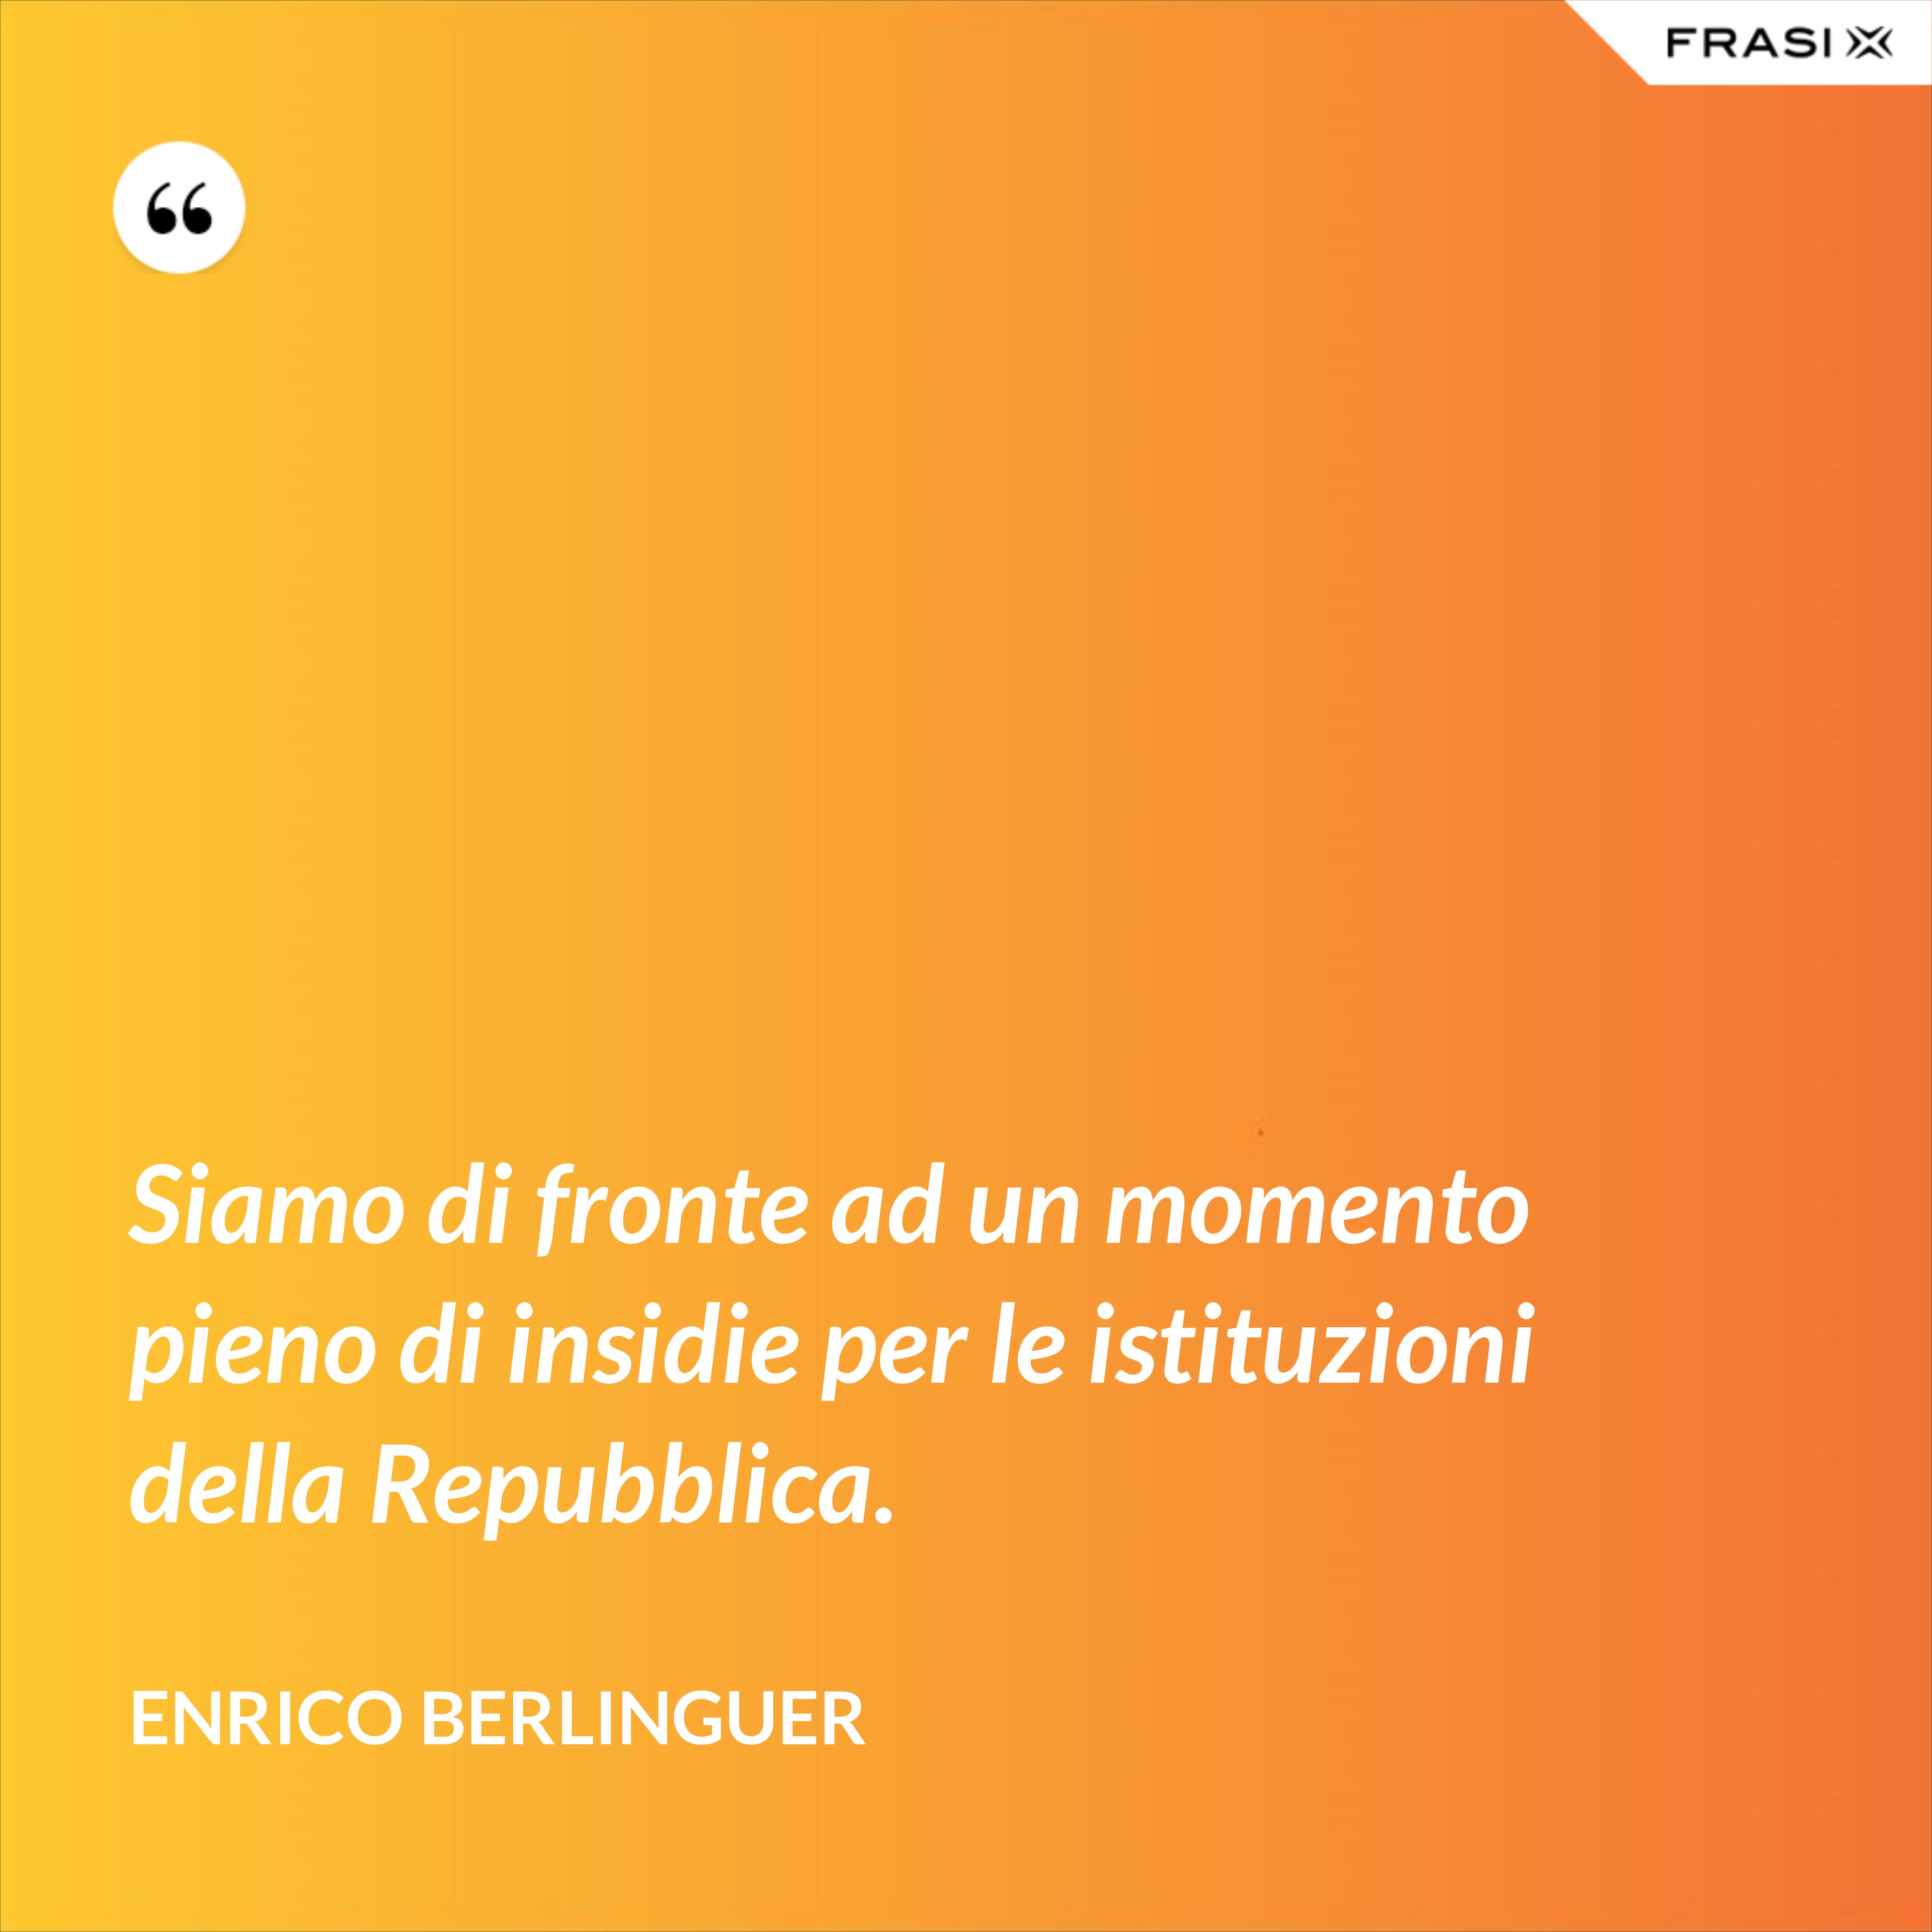 Siamo di fronte ad un momento pieno di insidie per le istituzioni della Repubblica. - Enrico Berlinguer